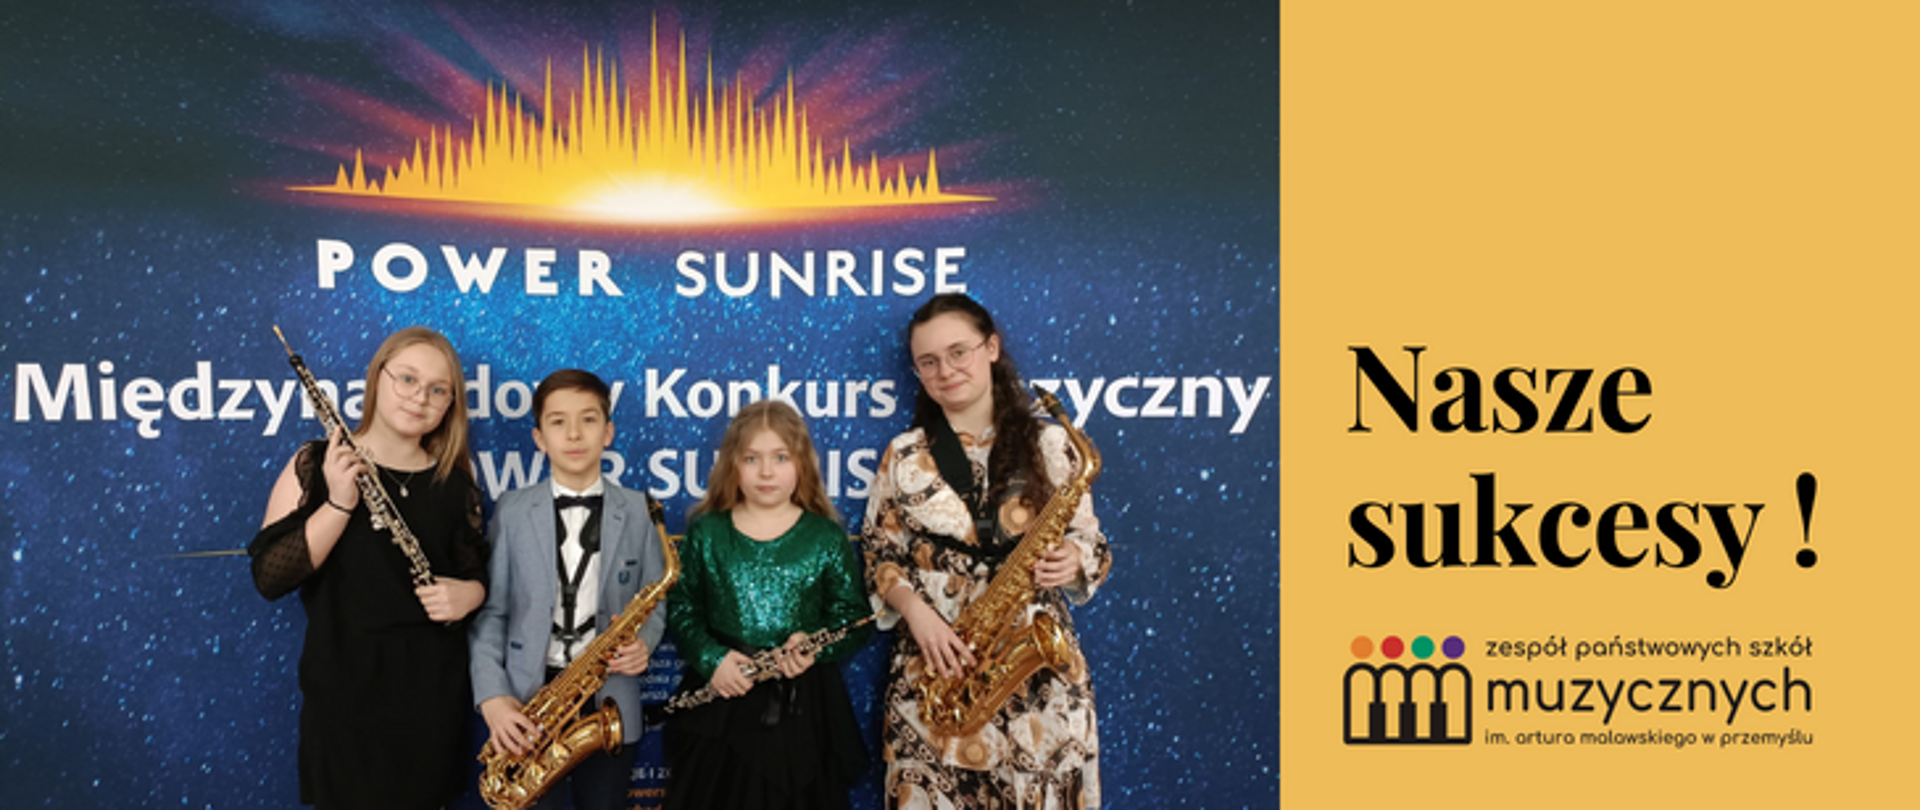 Zdjęcie laureatów I Międzynarodowego Konkursu Muzycznego „POWER SUNRISE” w Skierniewicach, po prawej stronie napis: Nasze sukcesy oraz logo szkoły